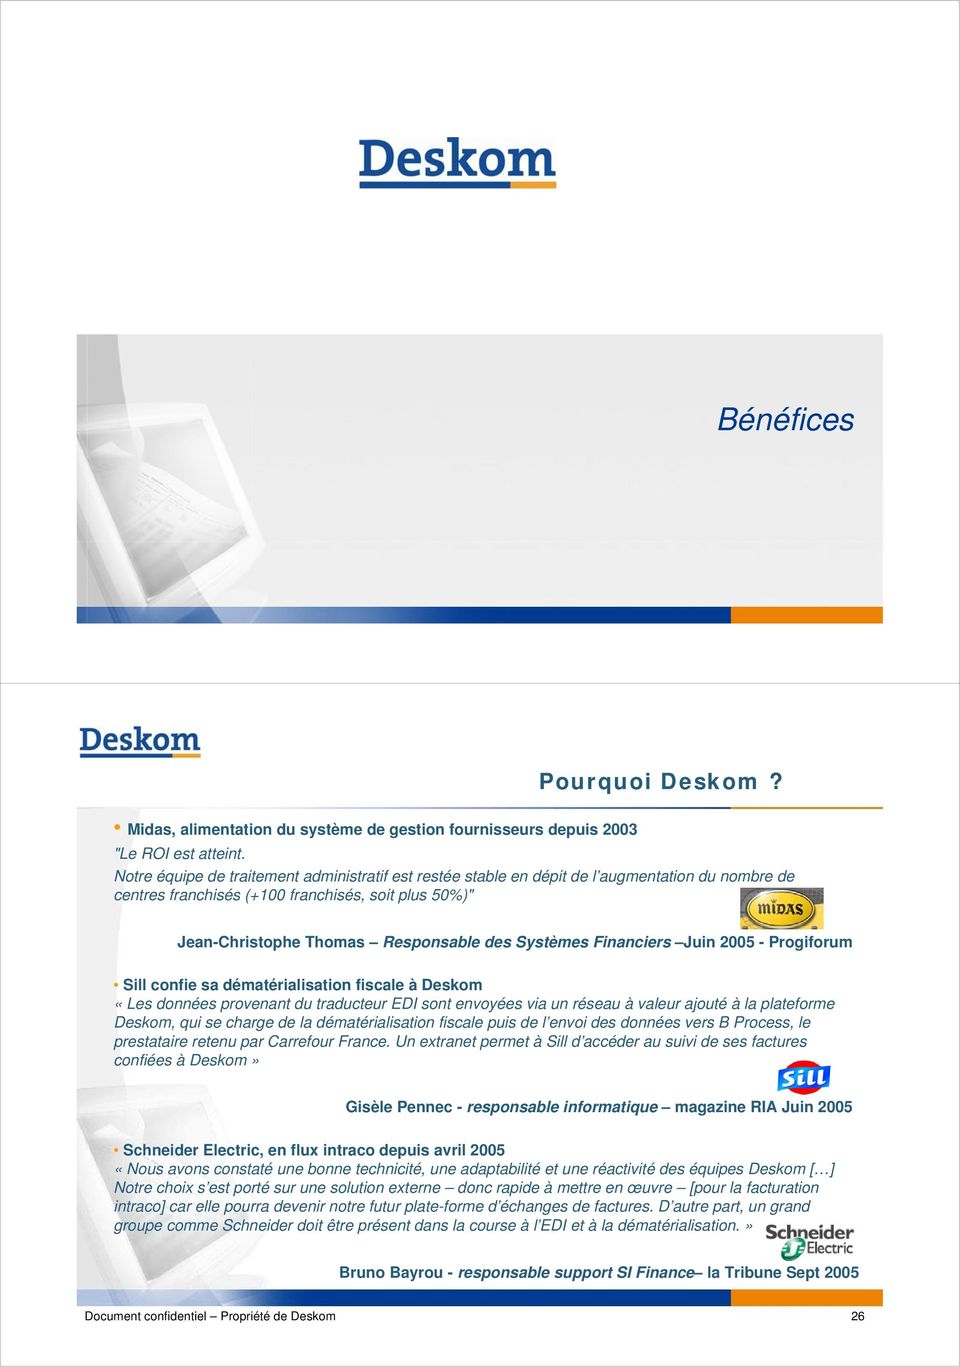 Financiers Juin 2005 - Progiforum Sill confie sa dématérialisation fiscale à Deskom «Les données provenant du traducteur EDI sont envoyées via un réseau à valeur ajouté à la plateforme Deskom, qui se